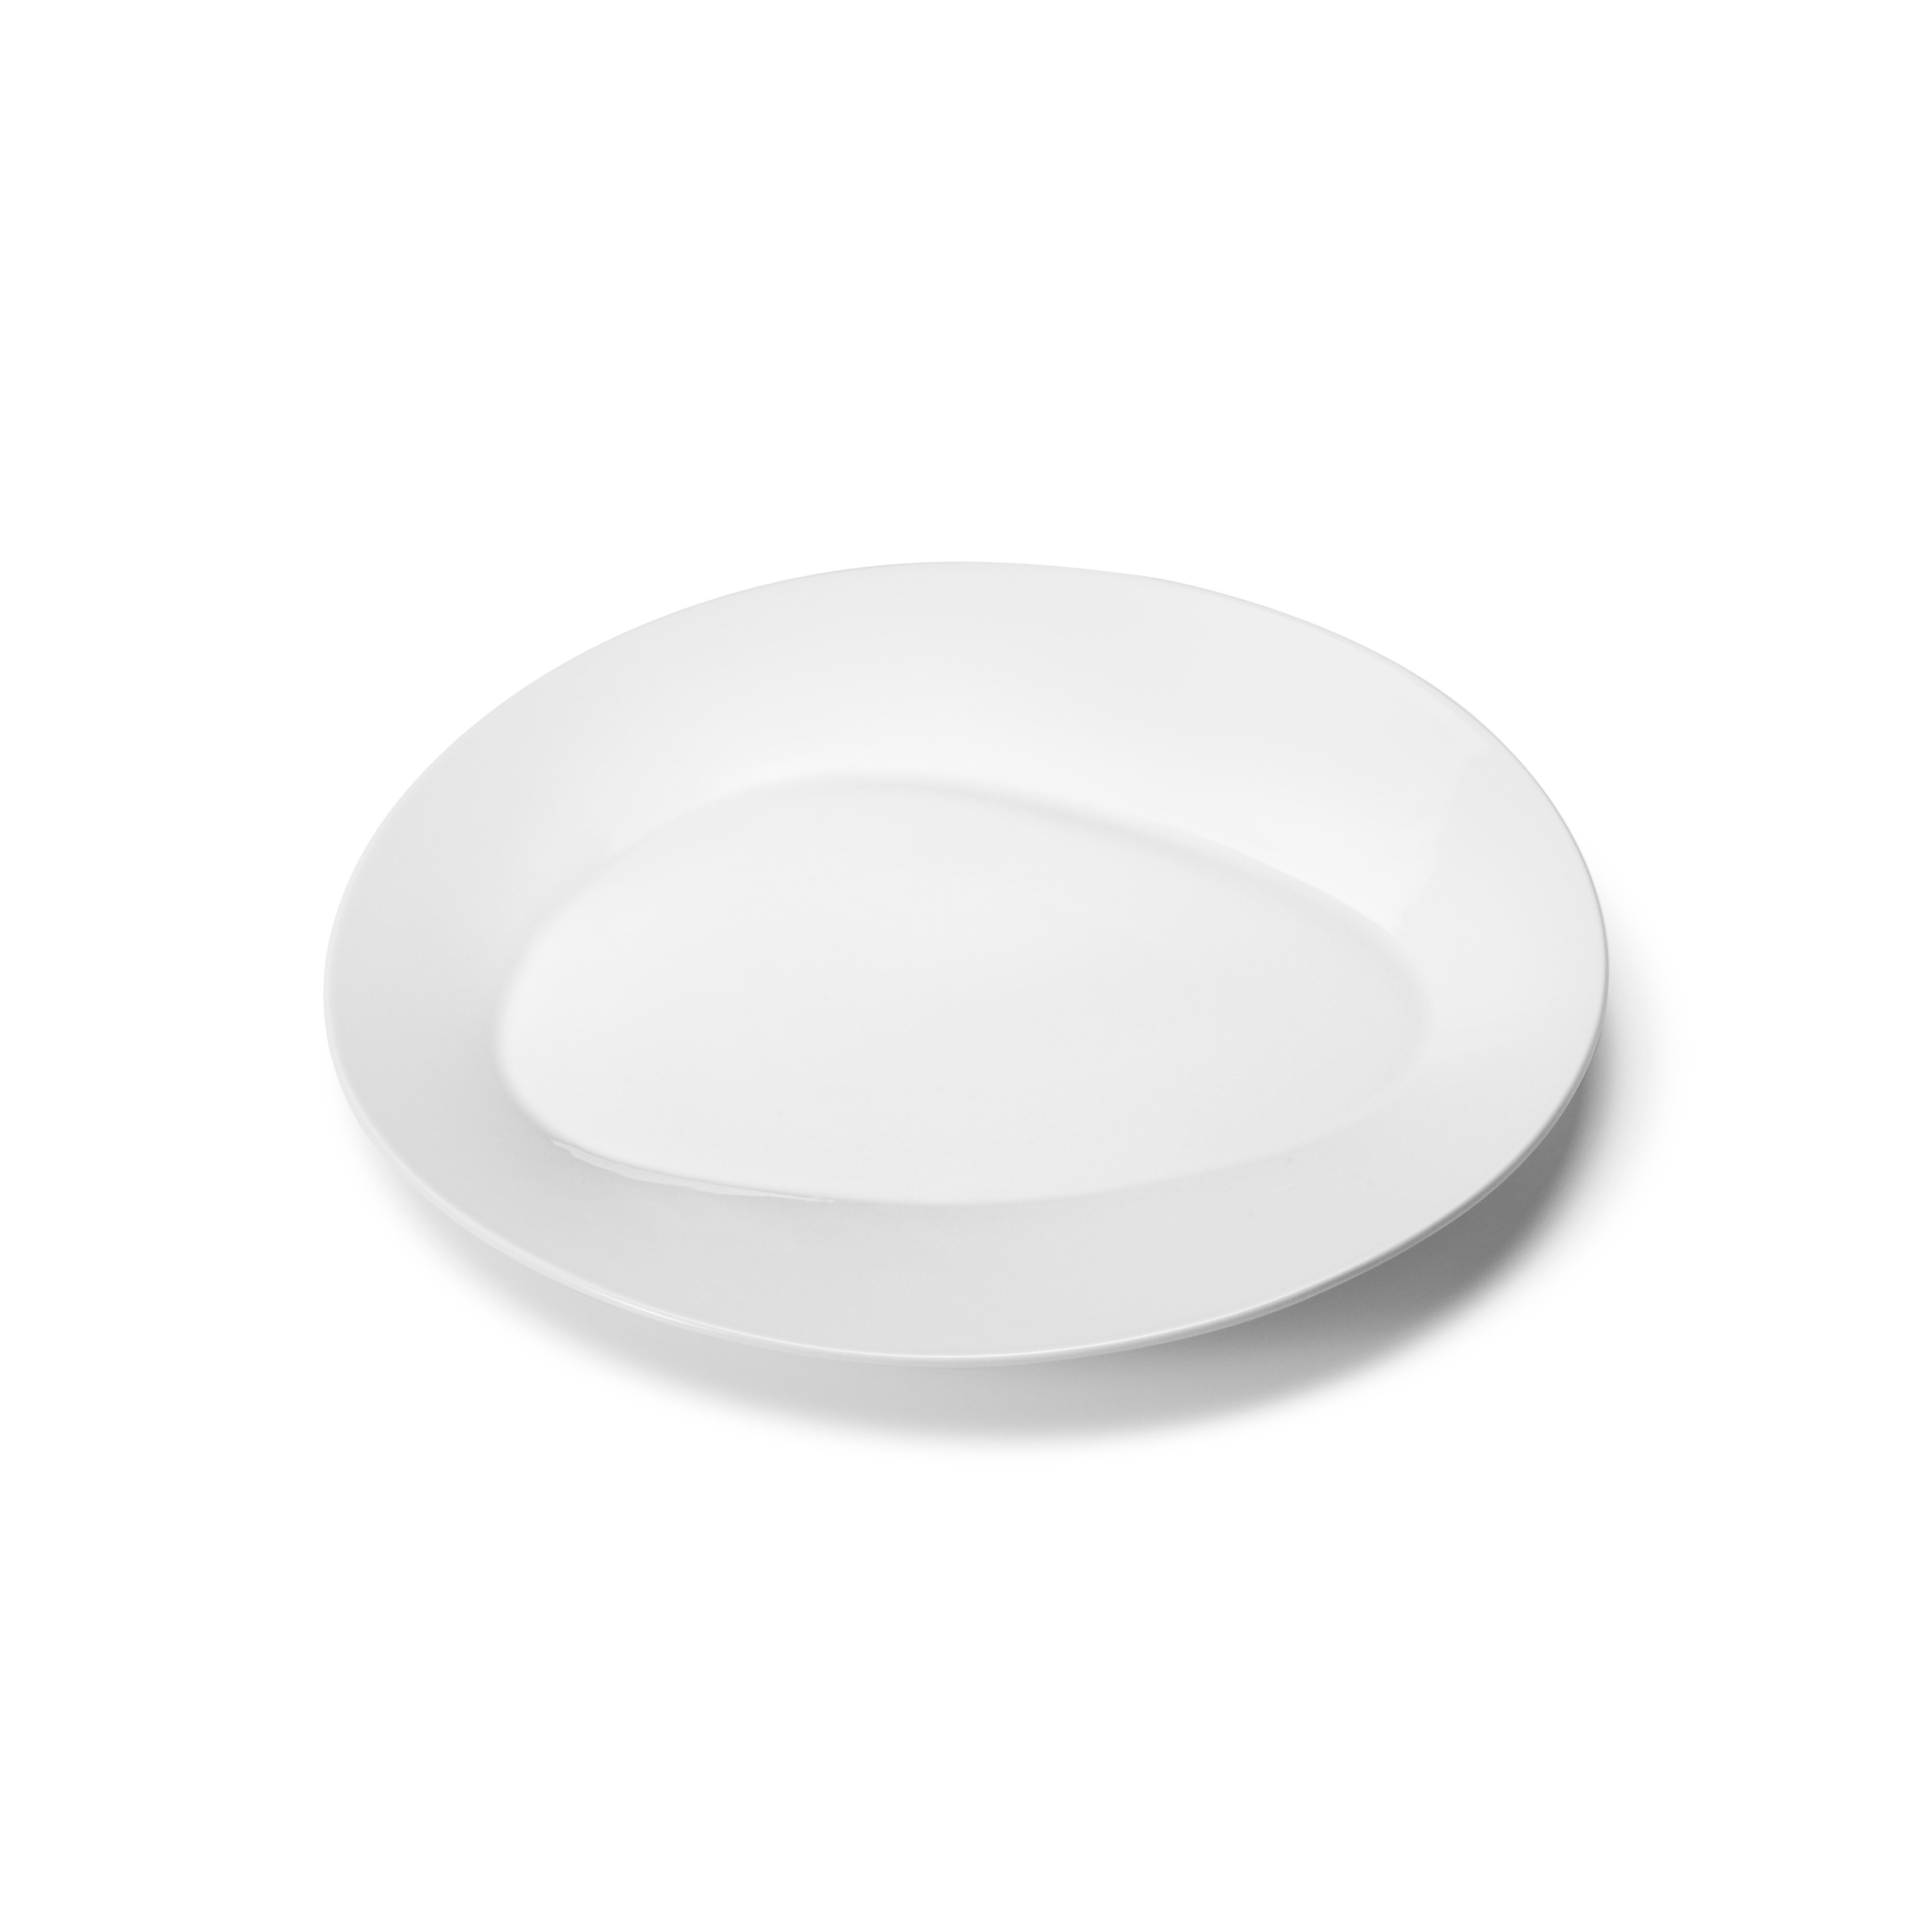 D'une simplicité trompeuse à première vue, cette assiette à dîner en porcelaine blanche révèle, en y regardant de plus près, qu'elle repose sur la forme organique caractéristique de la collection Sky. Ce détail minimaliste ajoute un cadre inhabituel